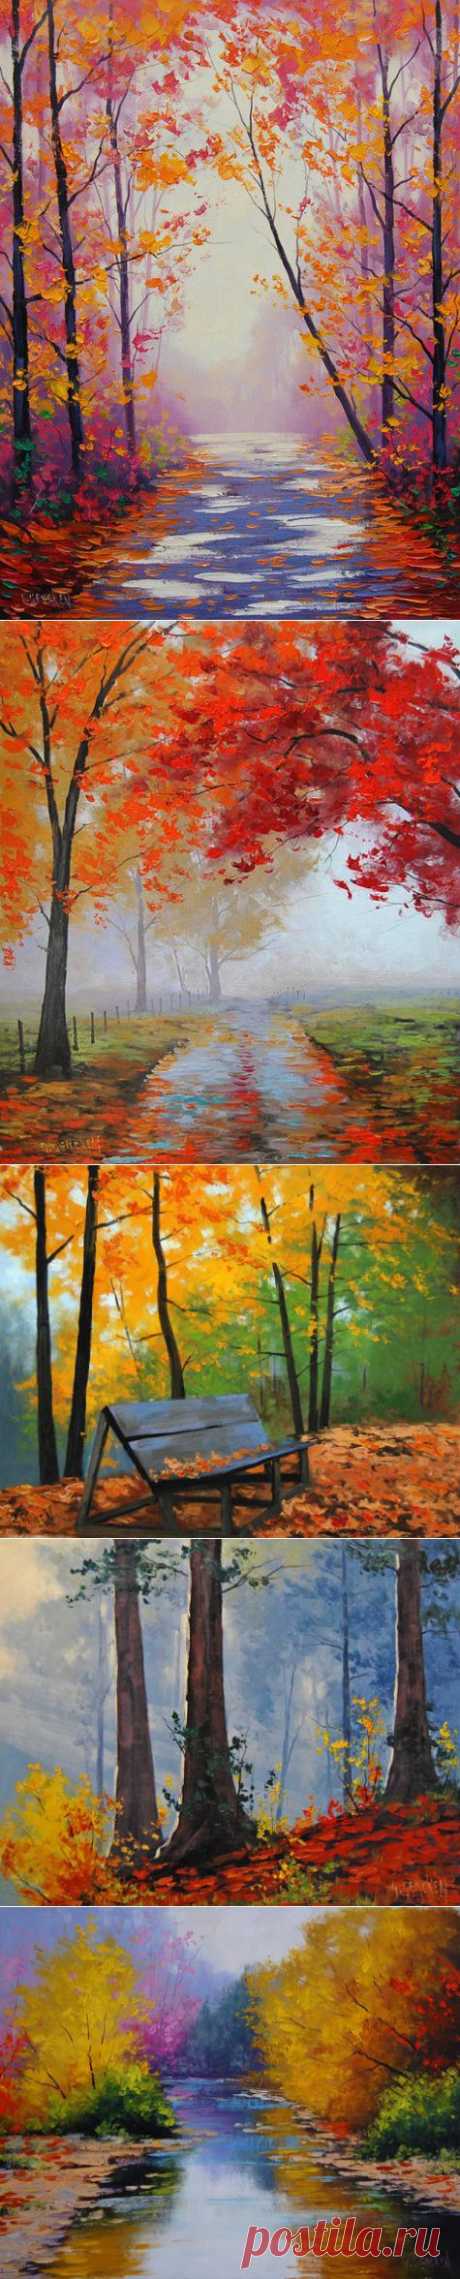 Красочная осень на картинах Graham Gercken